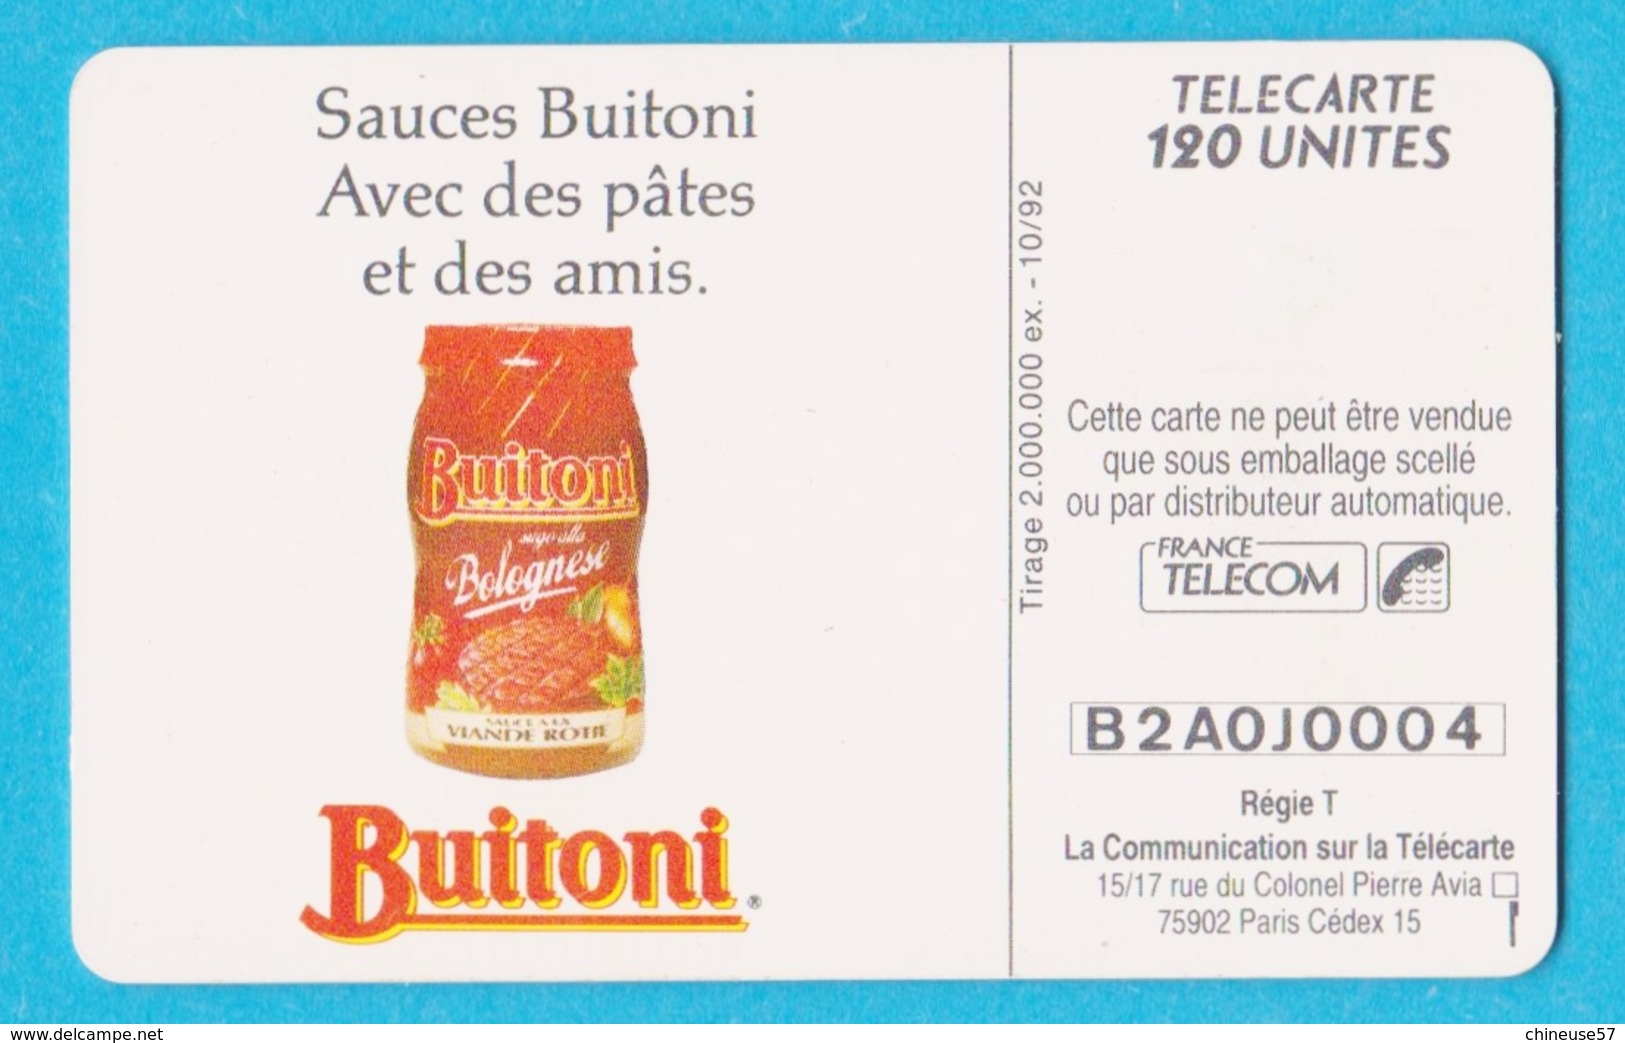 Télécarte 120 Buitoni Sauces Pates - 120 Eenheden